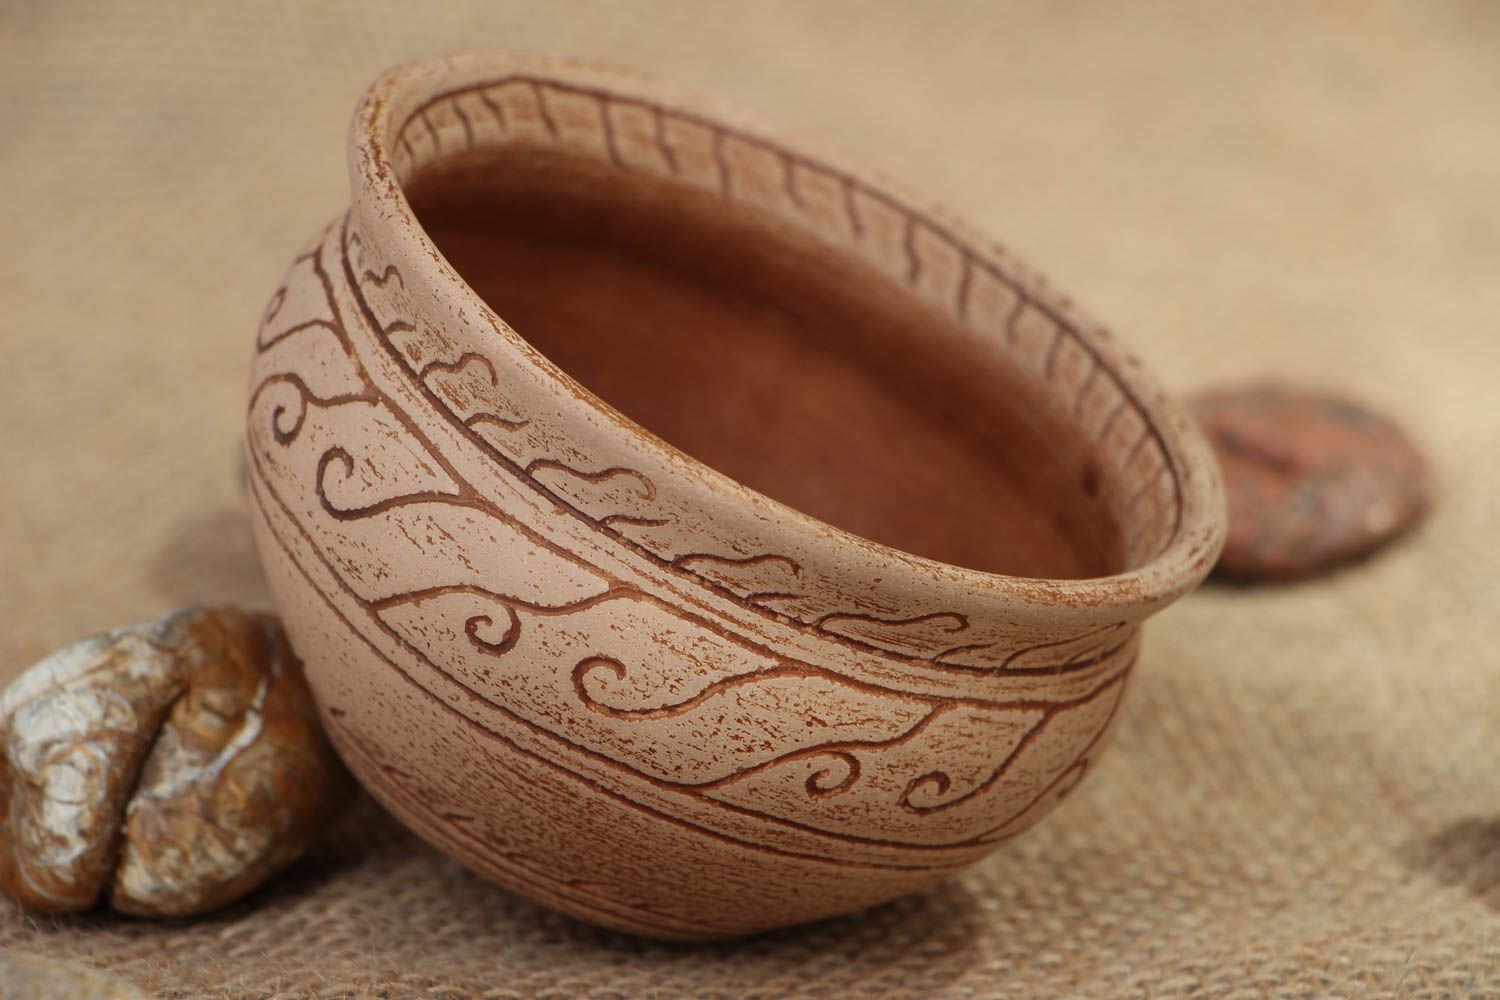 Homemade ceramic bowl photo 5